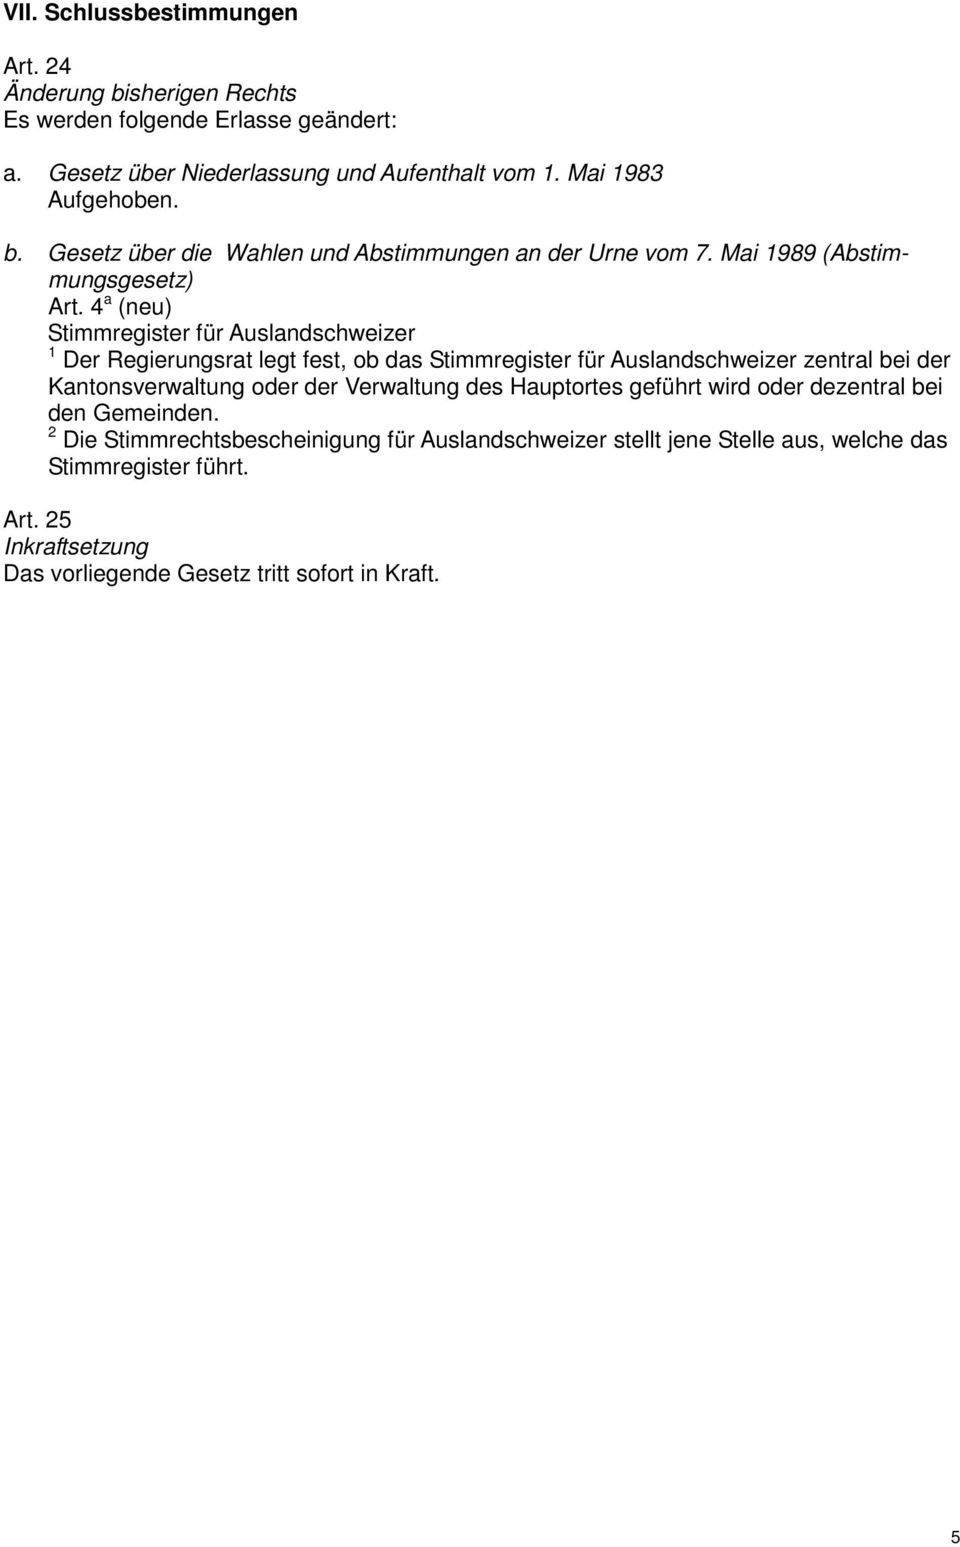 4 a (neu) Stimmregister für Auslandschweizer Der Regierungsrat legt fest, ob das Stimmregister für Auslandschweizer zentral bei der Kantonsverwaltung oder der